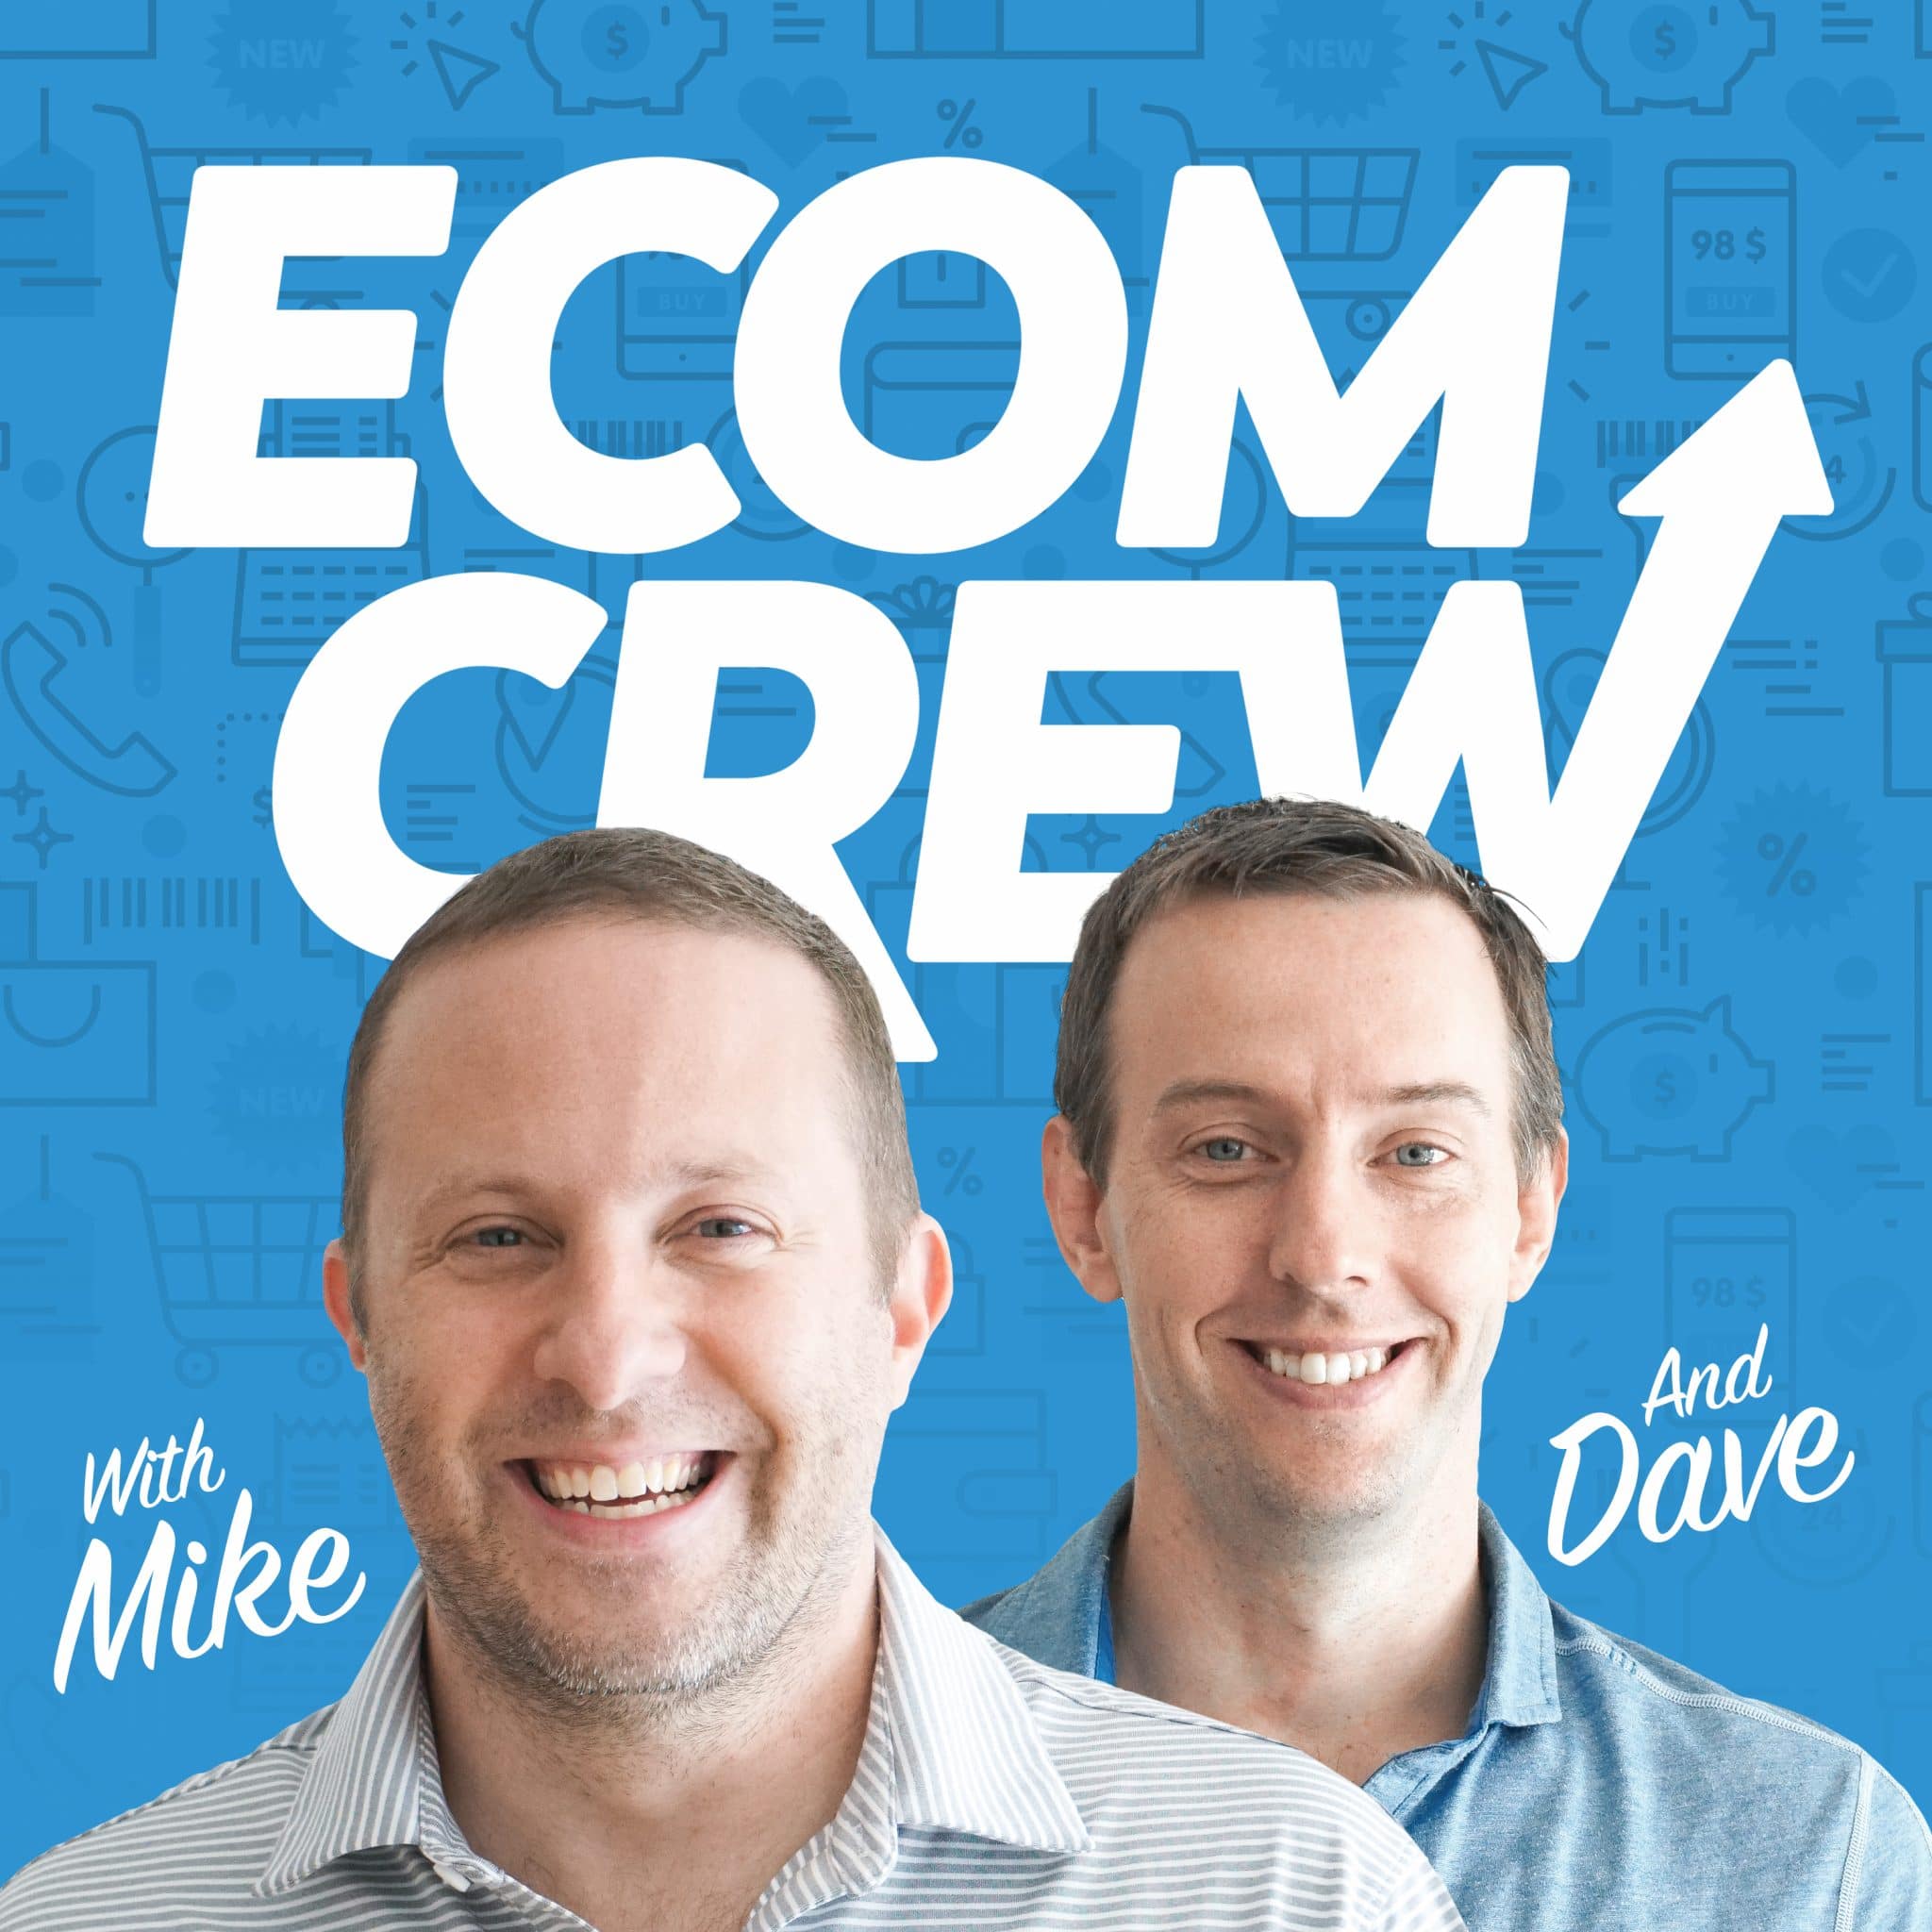 EcomCrew Podcast